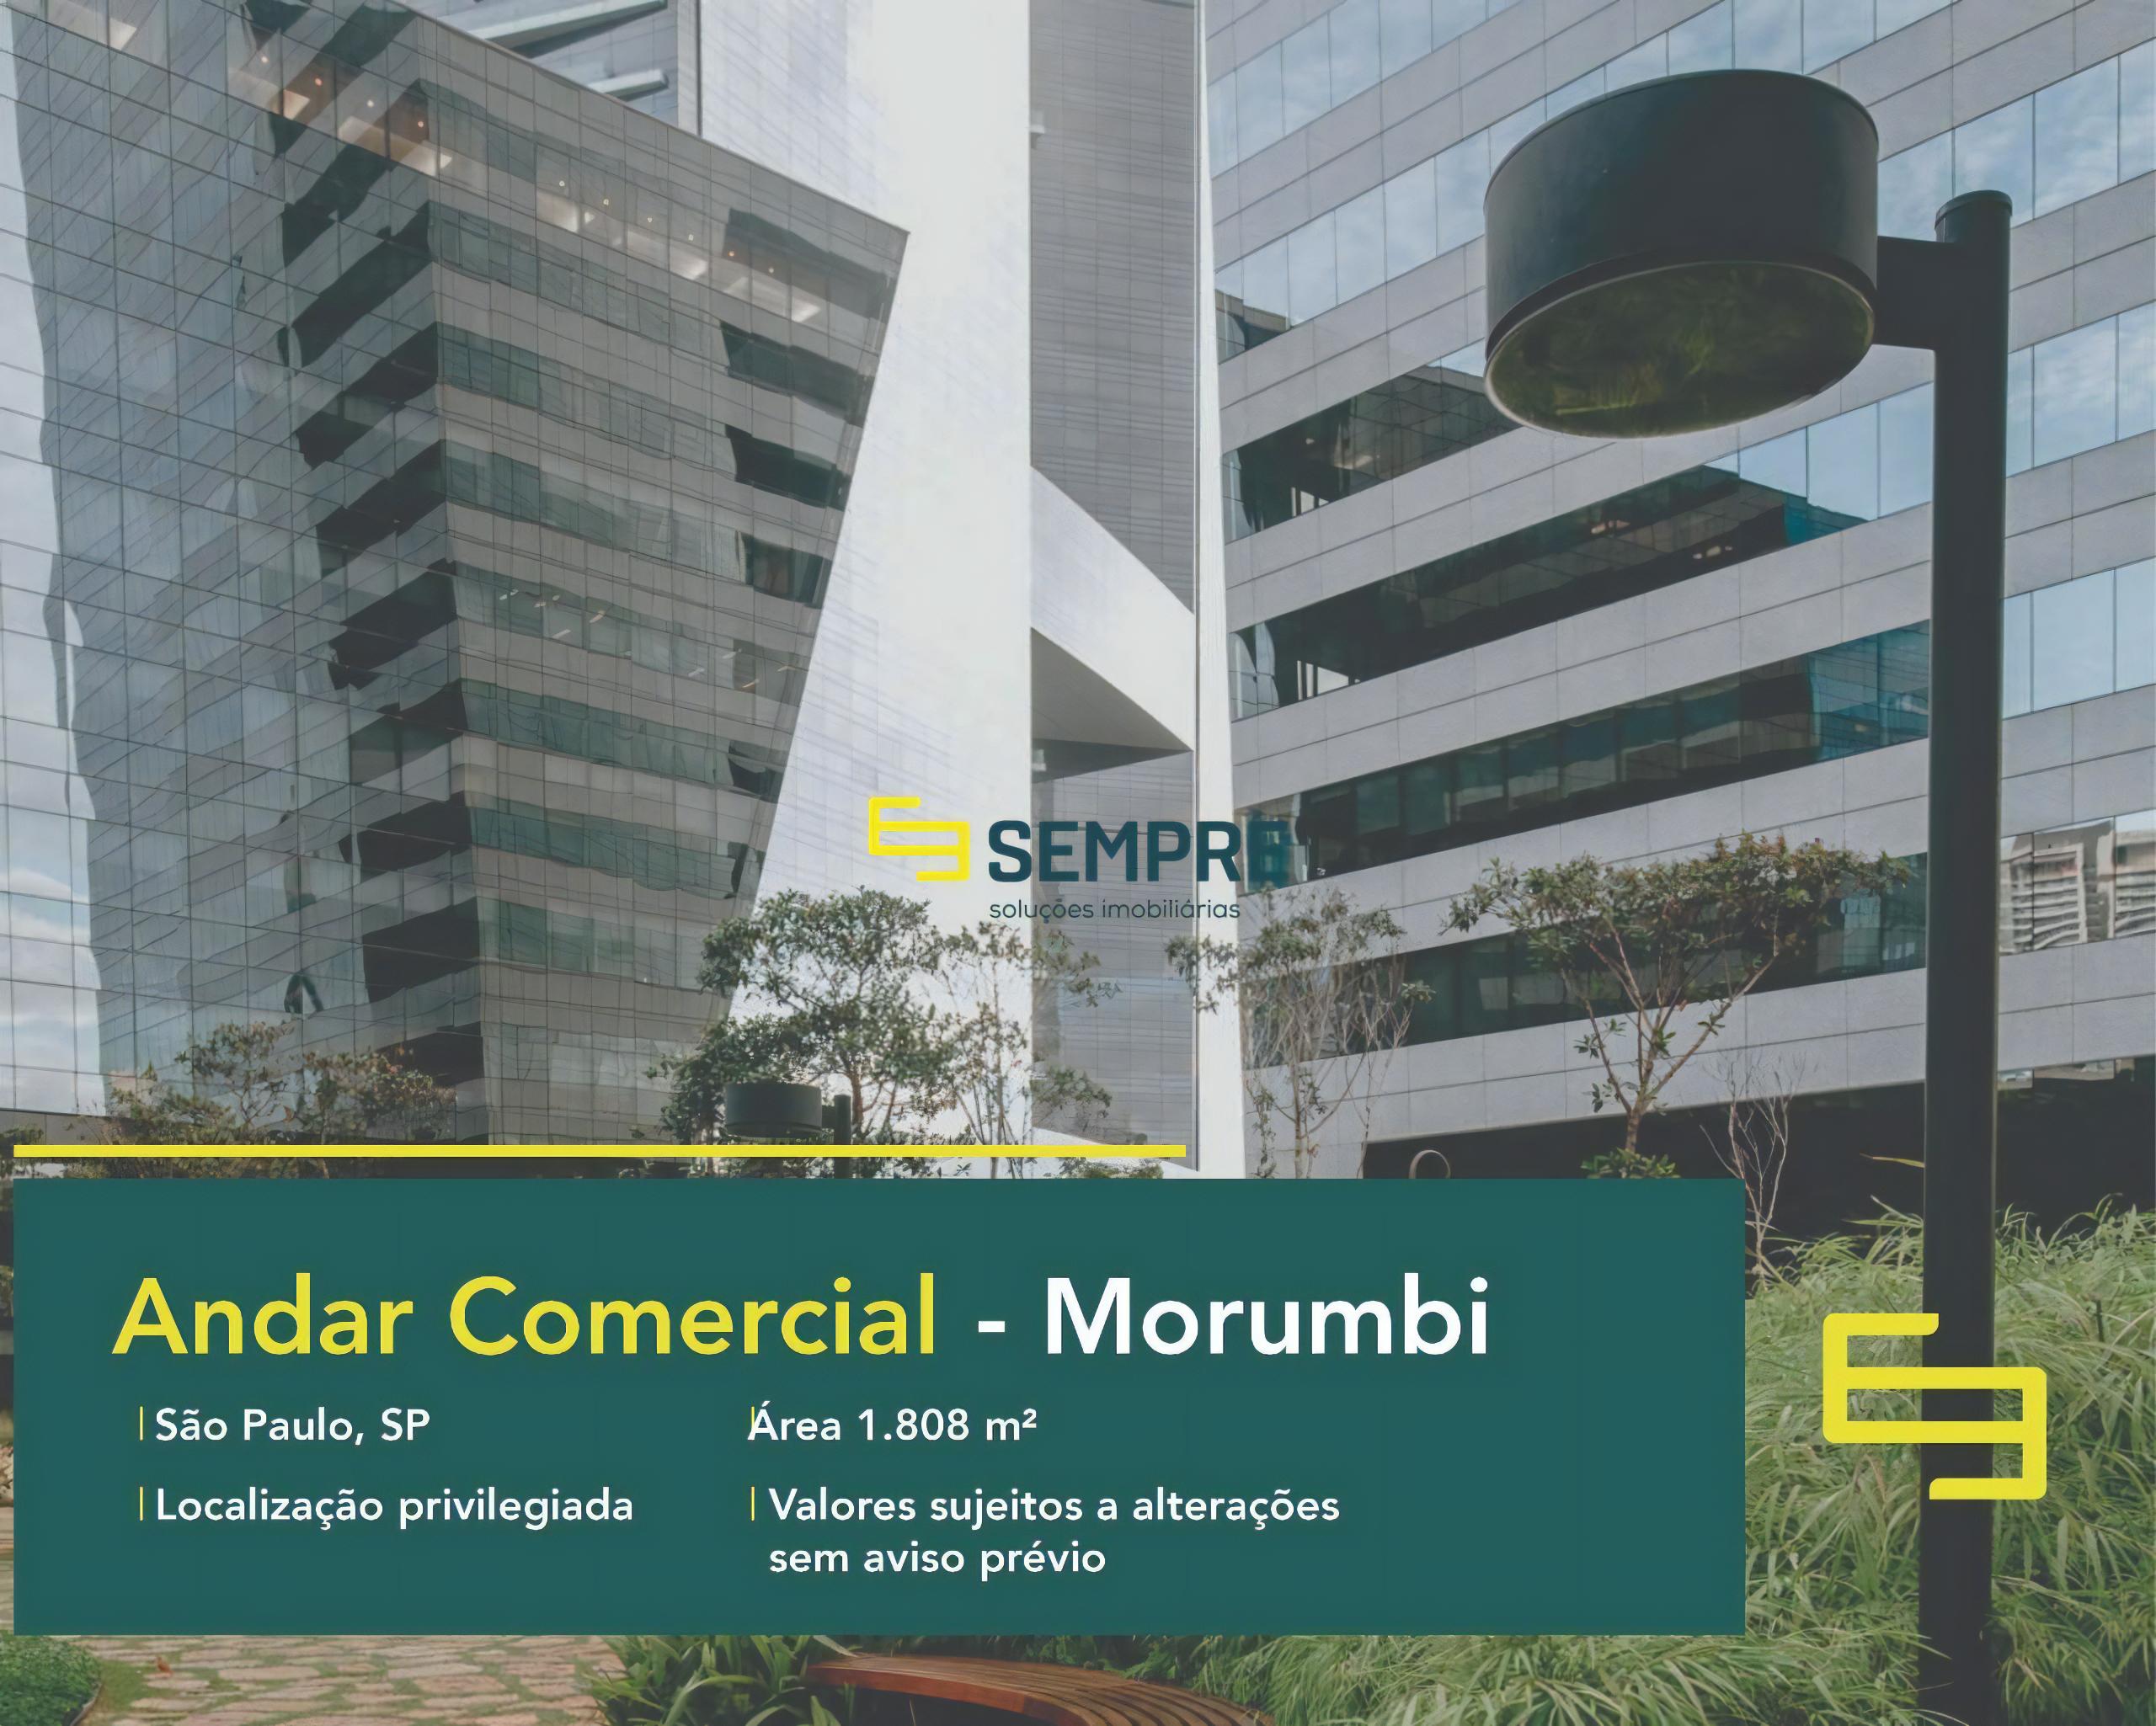 Andar corporativo no Morumbi para alugar em SP, excelente localização. O estabelecimento comercial conta com área de 1.808 m².